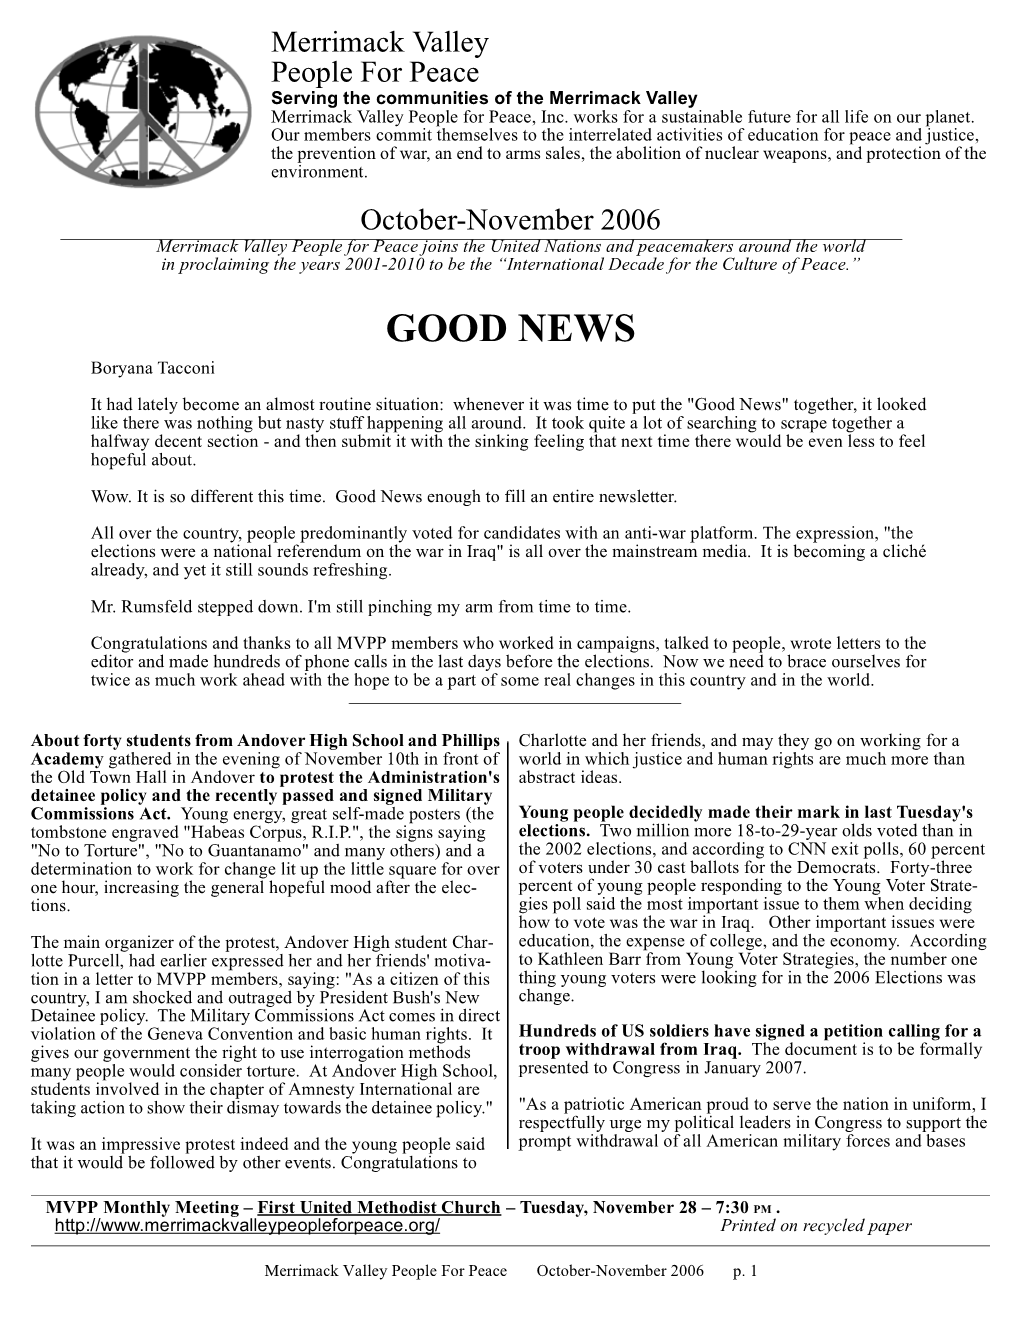 October-November 2006